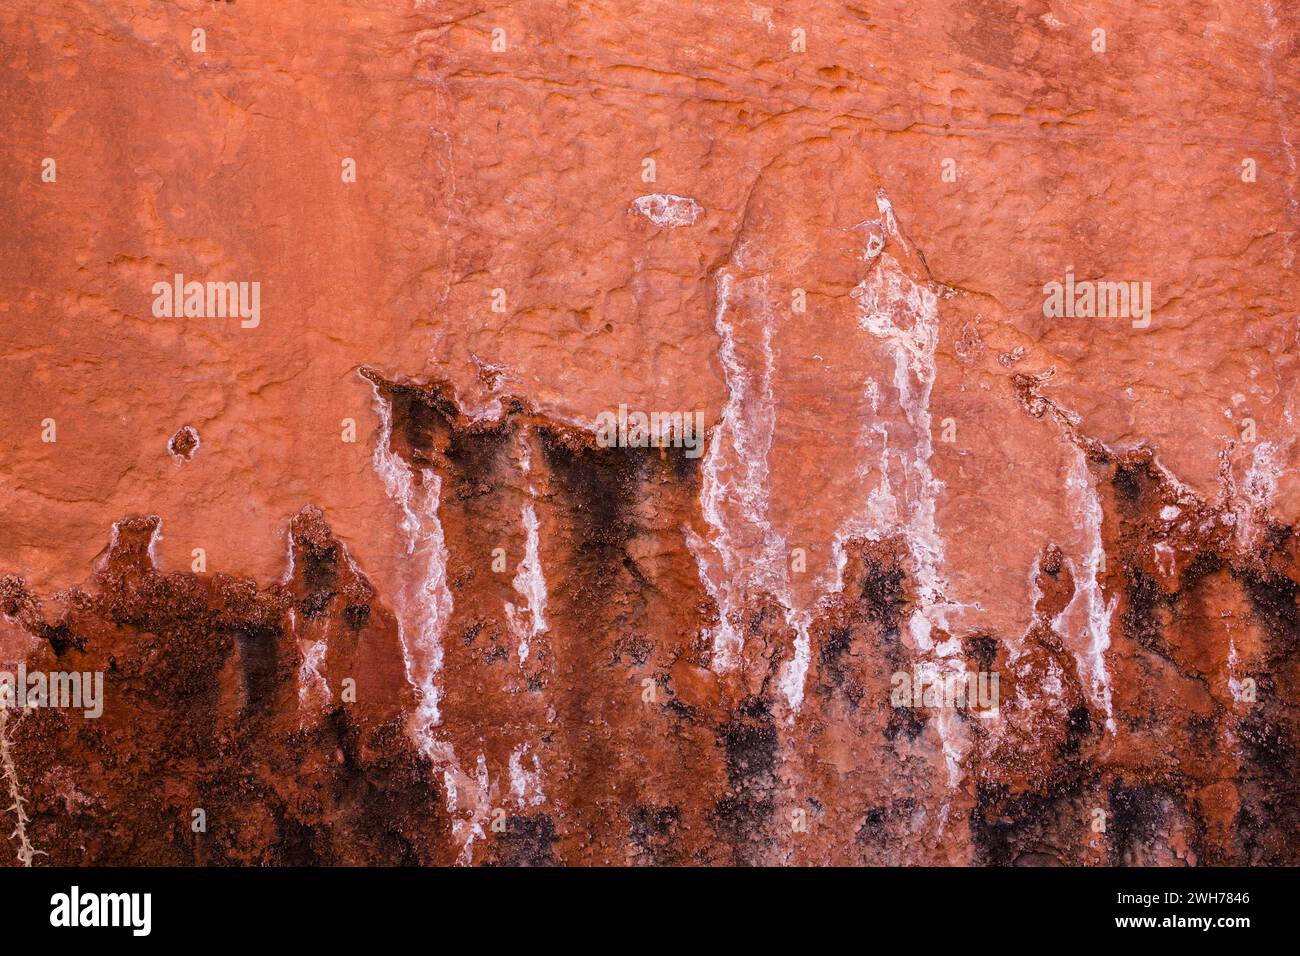 Formazioni di arenaria azteca colorate erose a Little Finland, Gold Butte National Monument, Nevada. Foto Stock